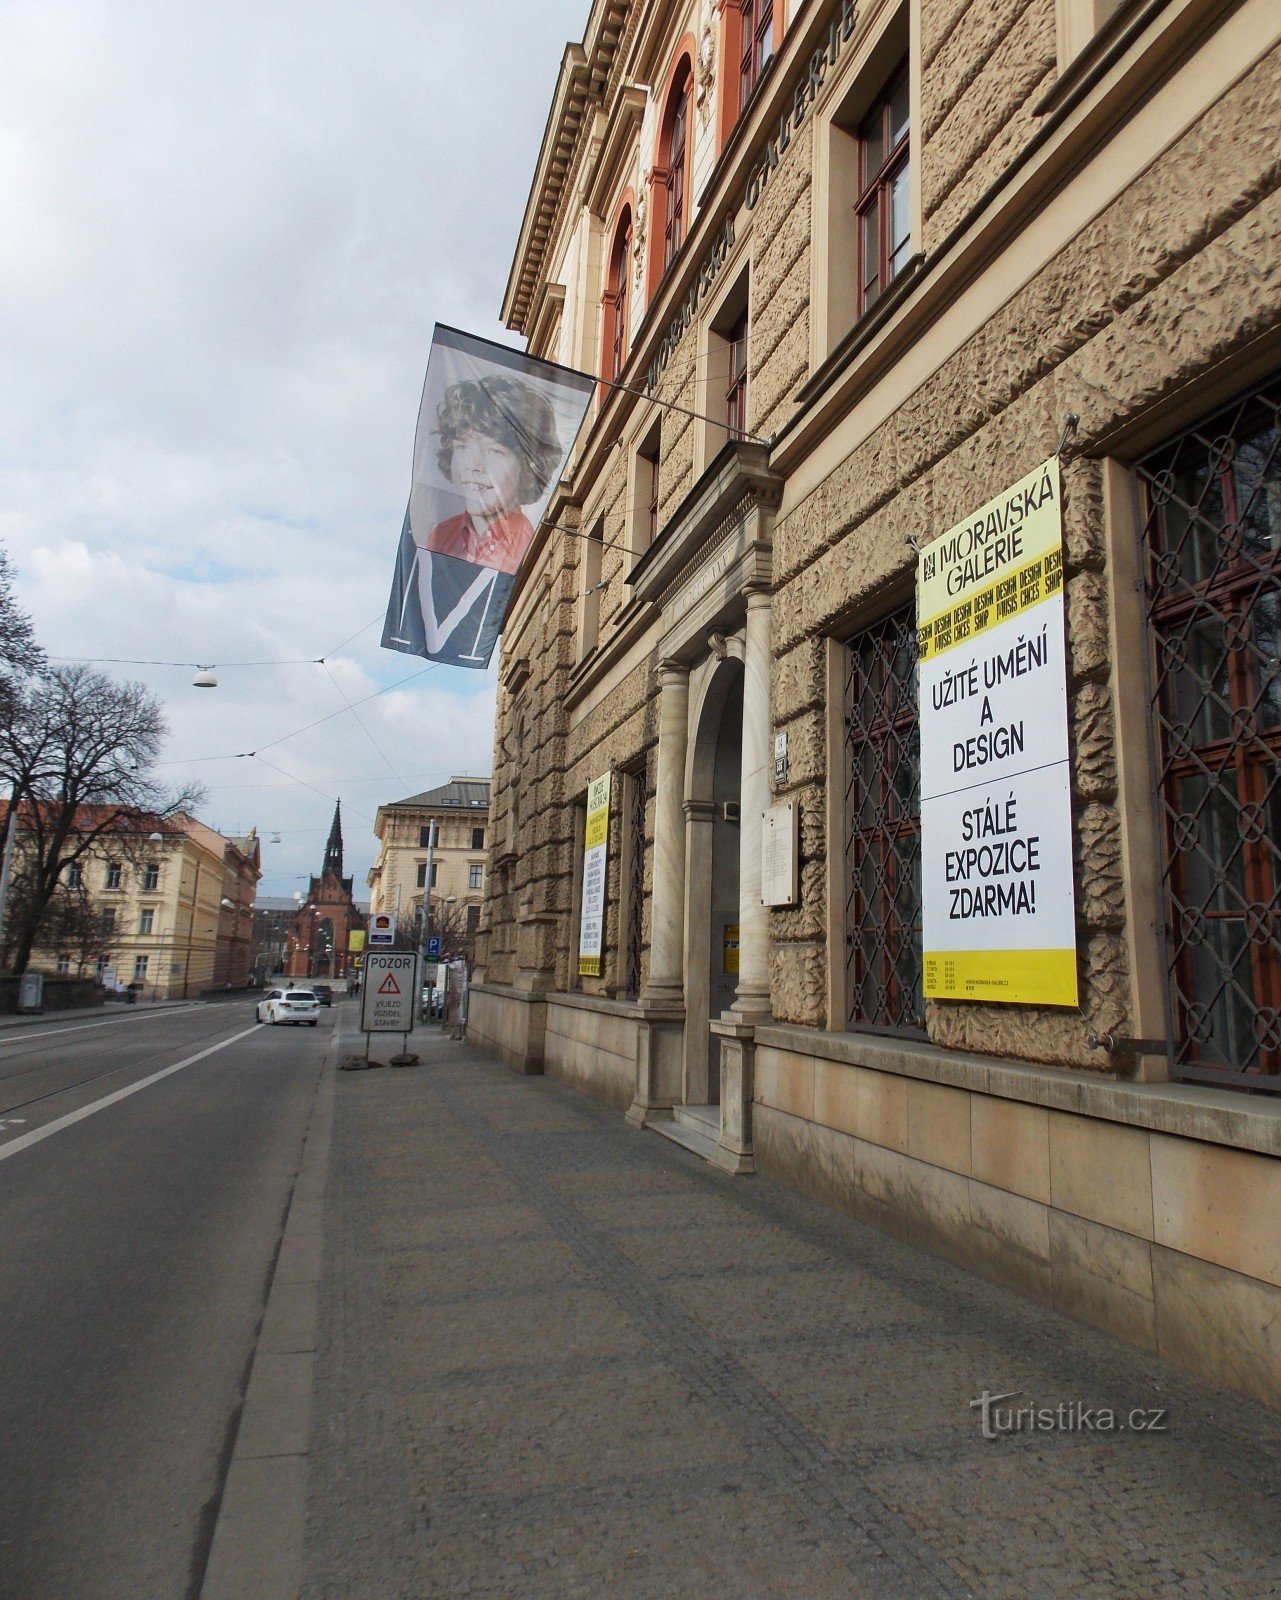 Bảo tàng Nghệ thuật và Công nghiệp thuộc Špilberk ở Brno